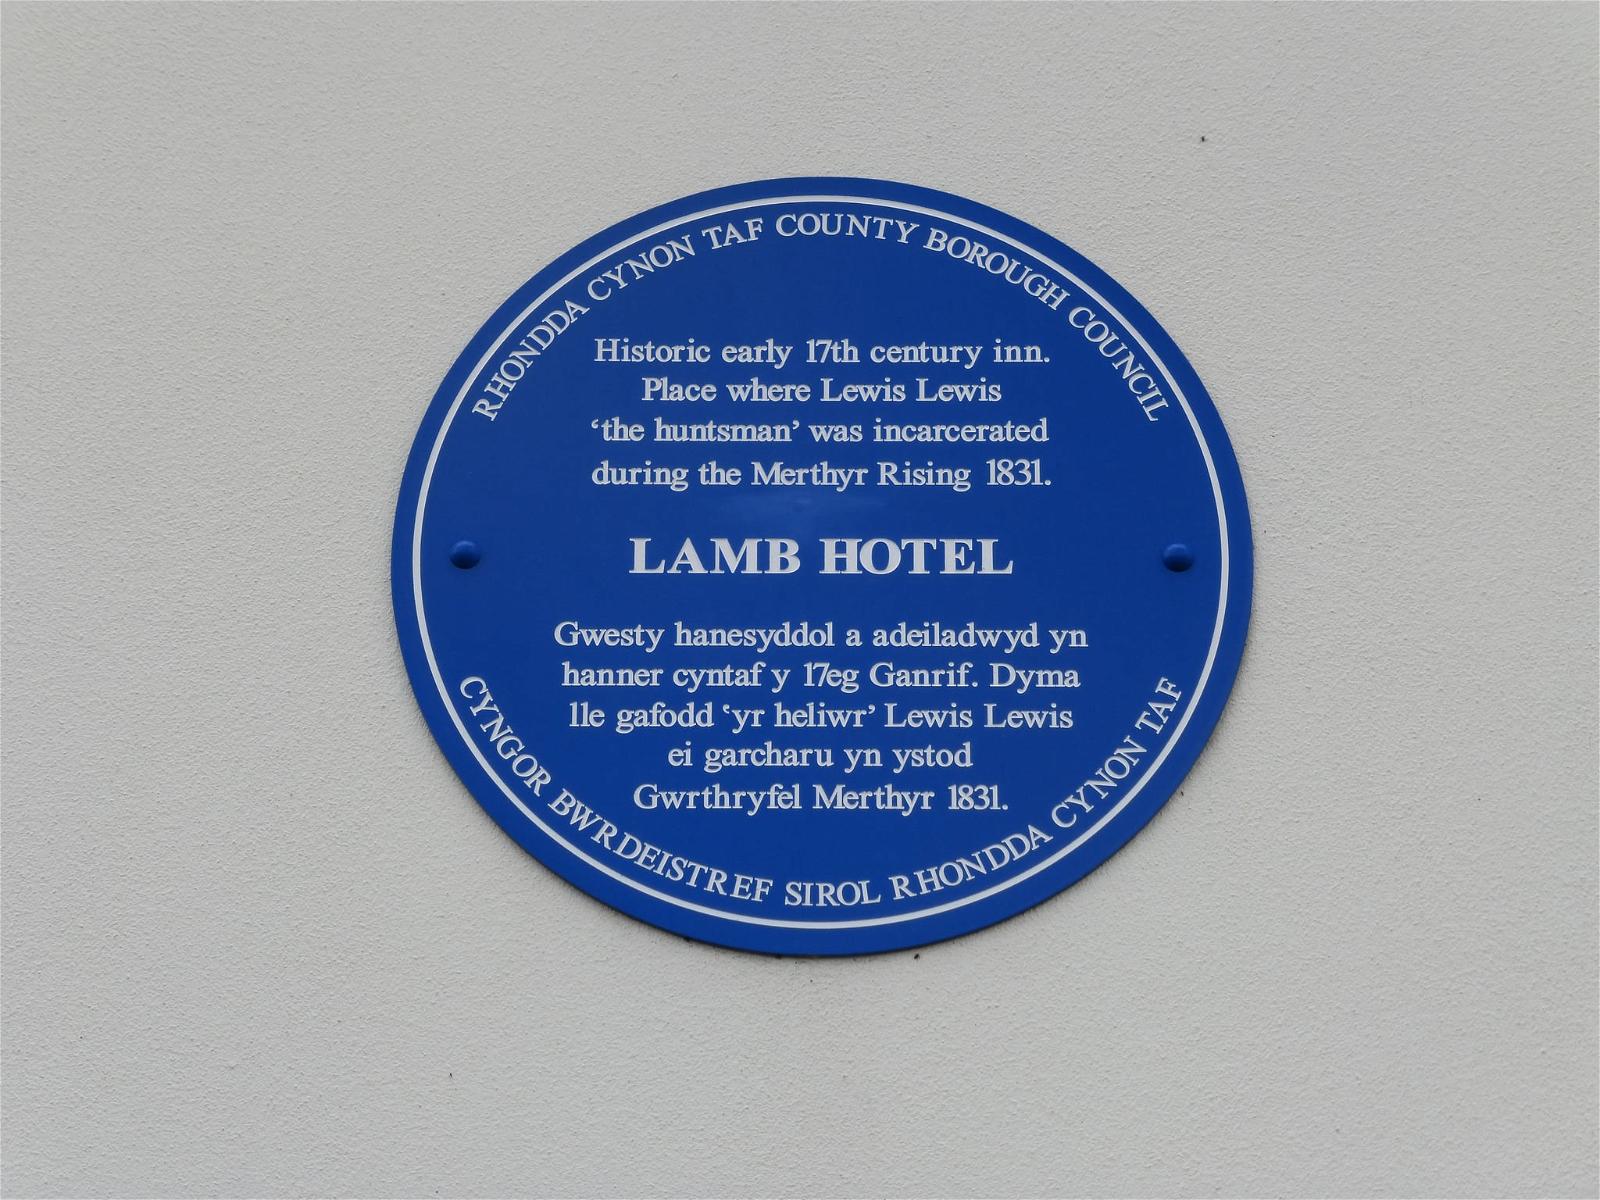 Lamb Hotel の画像. openplaques:id=39663